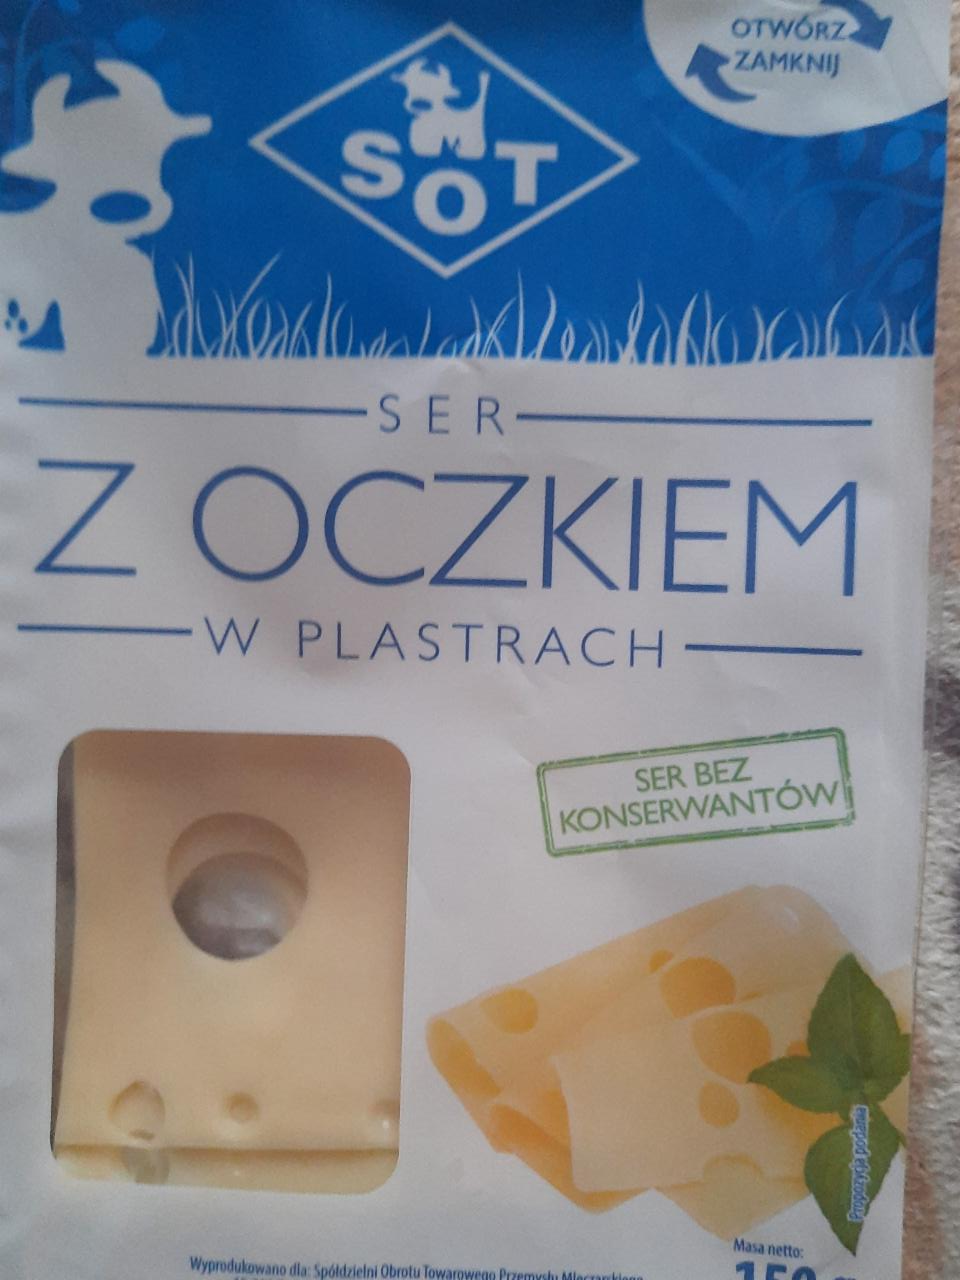 Фото - сыр полутвердый с дырками пластины 45% Ser Oczkiem SOT